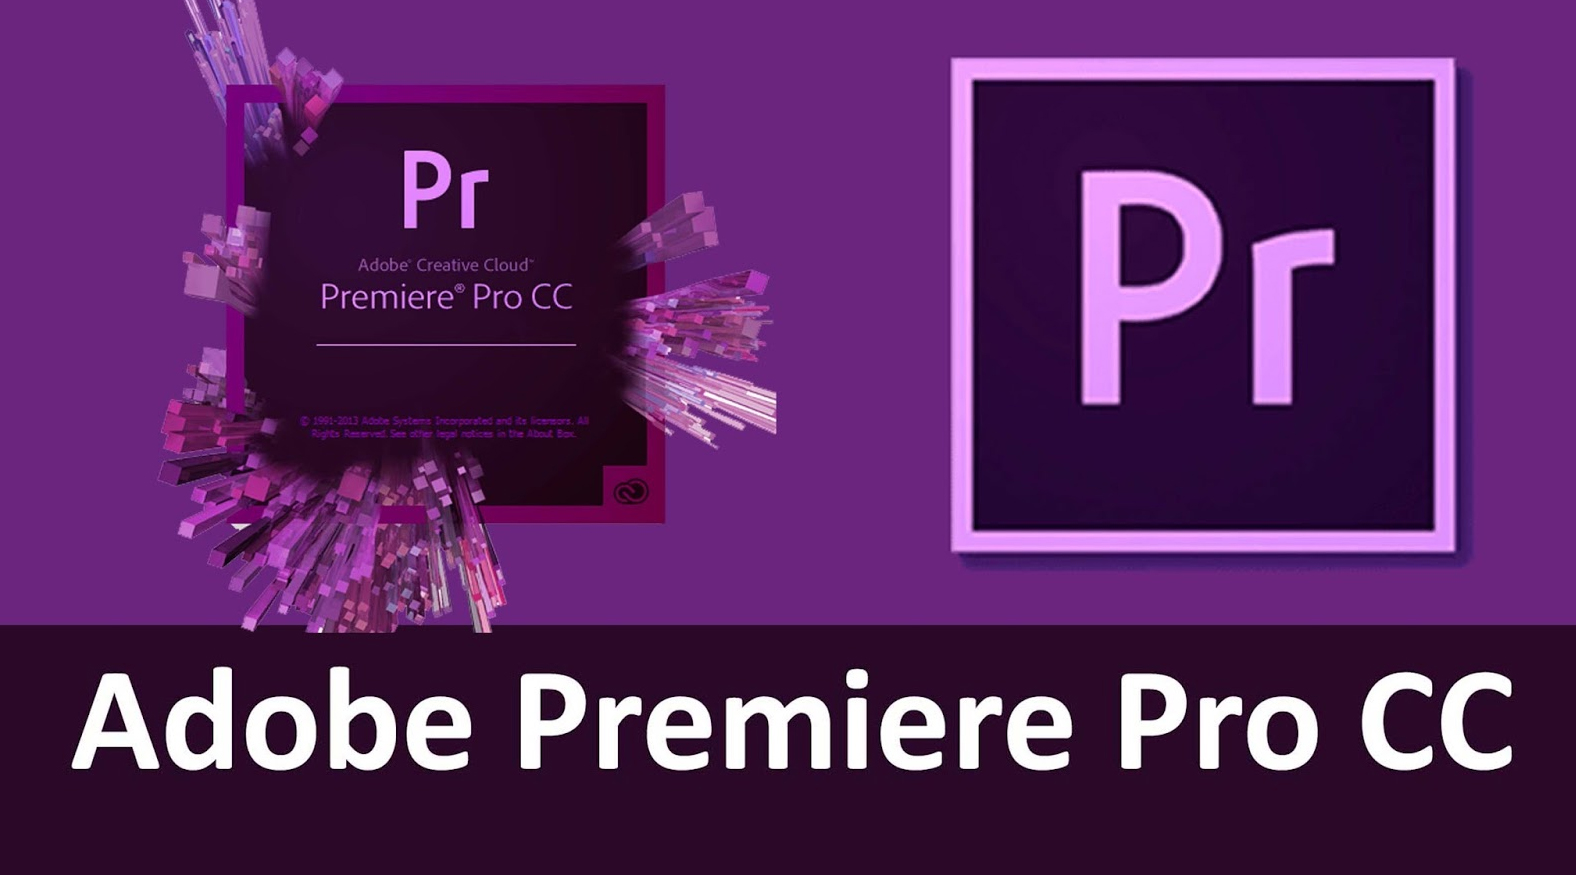 Adobe Premiere Pro CC 2019 - Download - Hướng dẫn cài đặt nhanh nhất